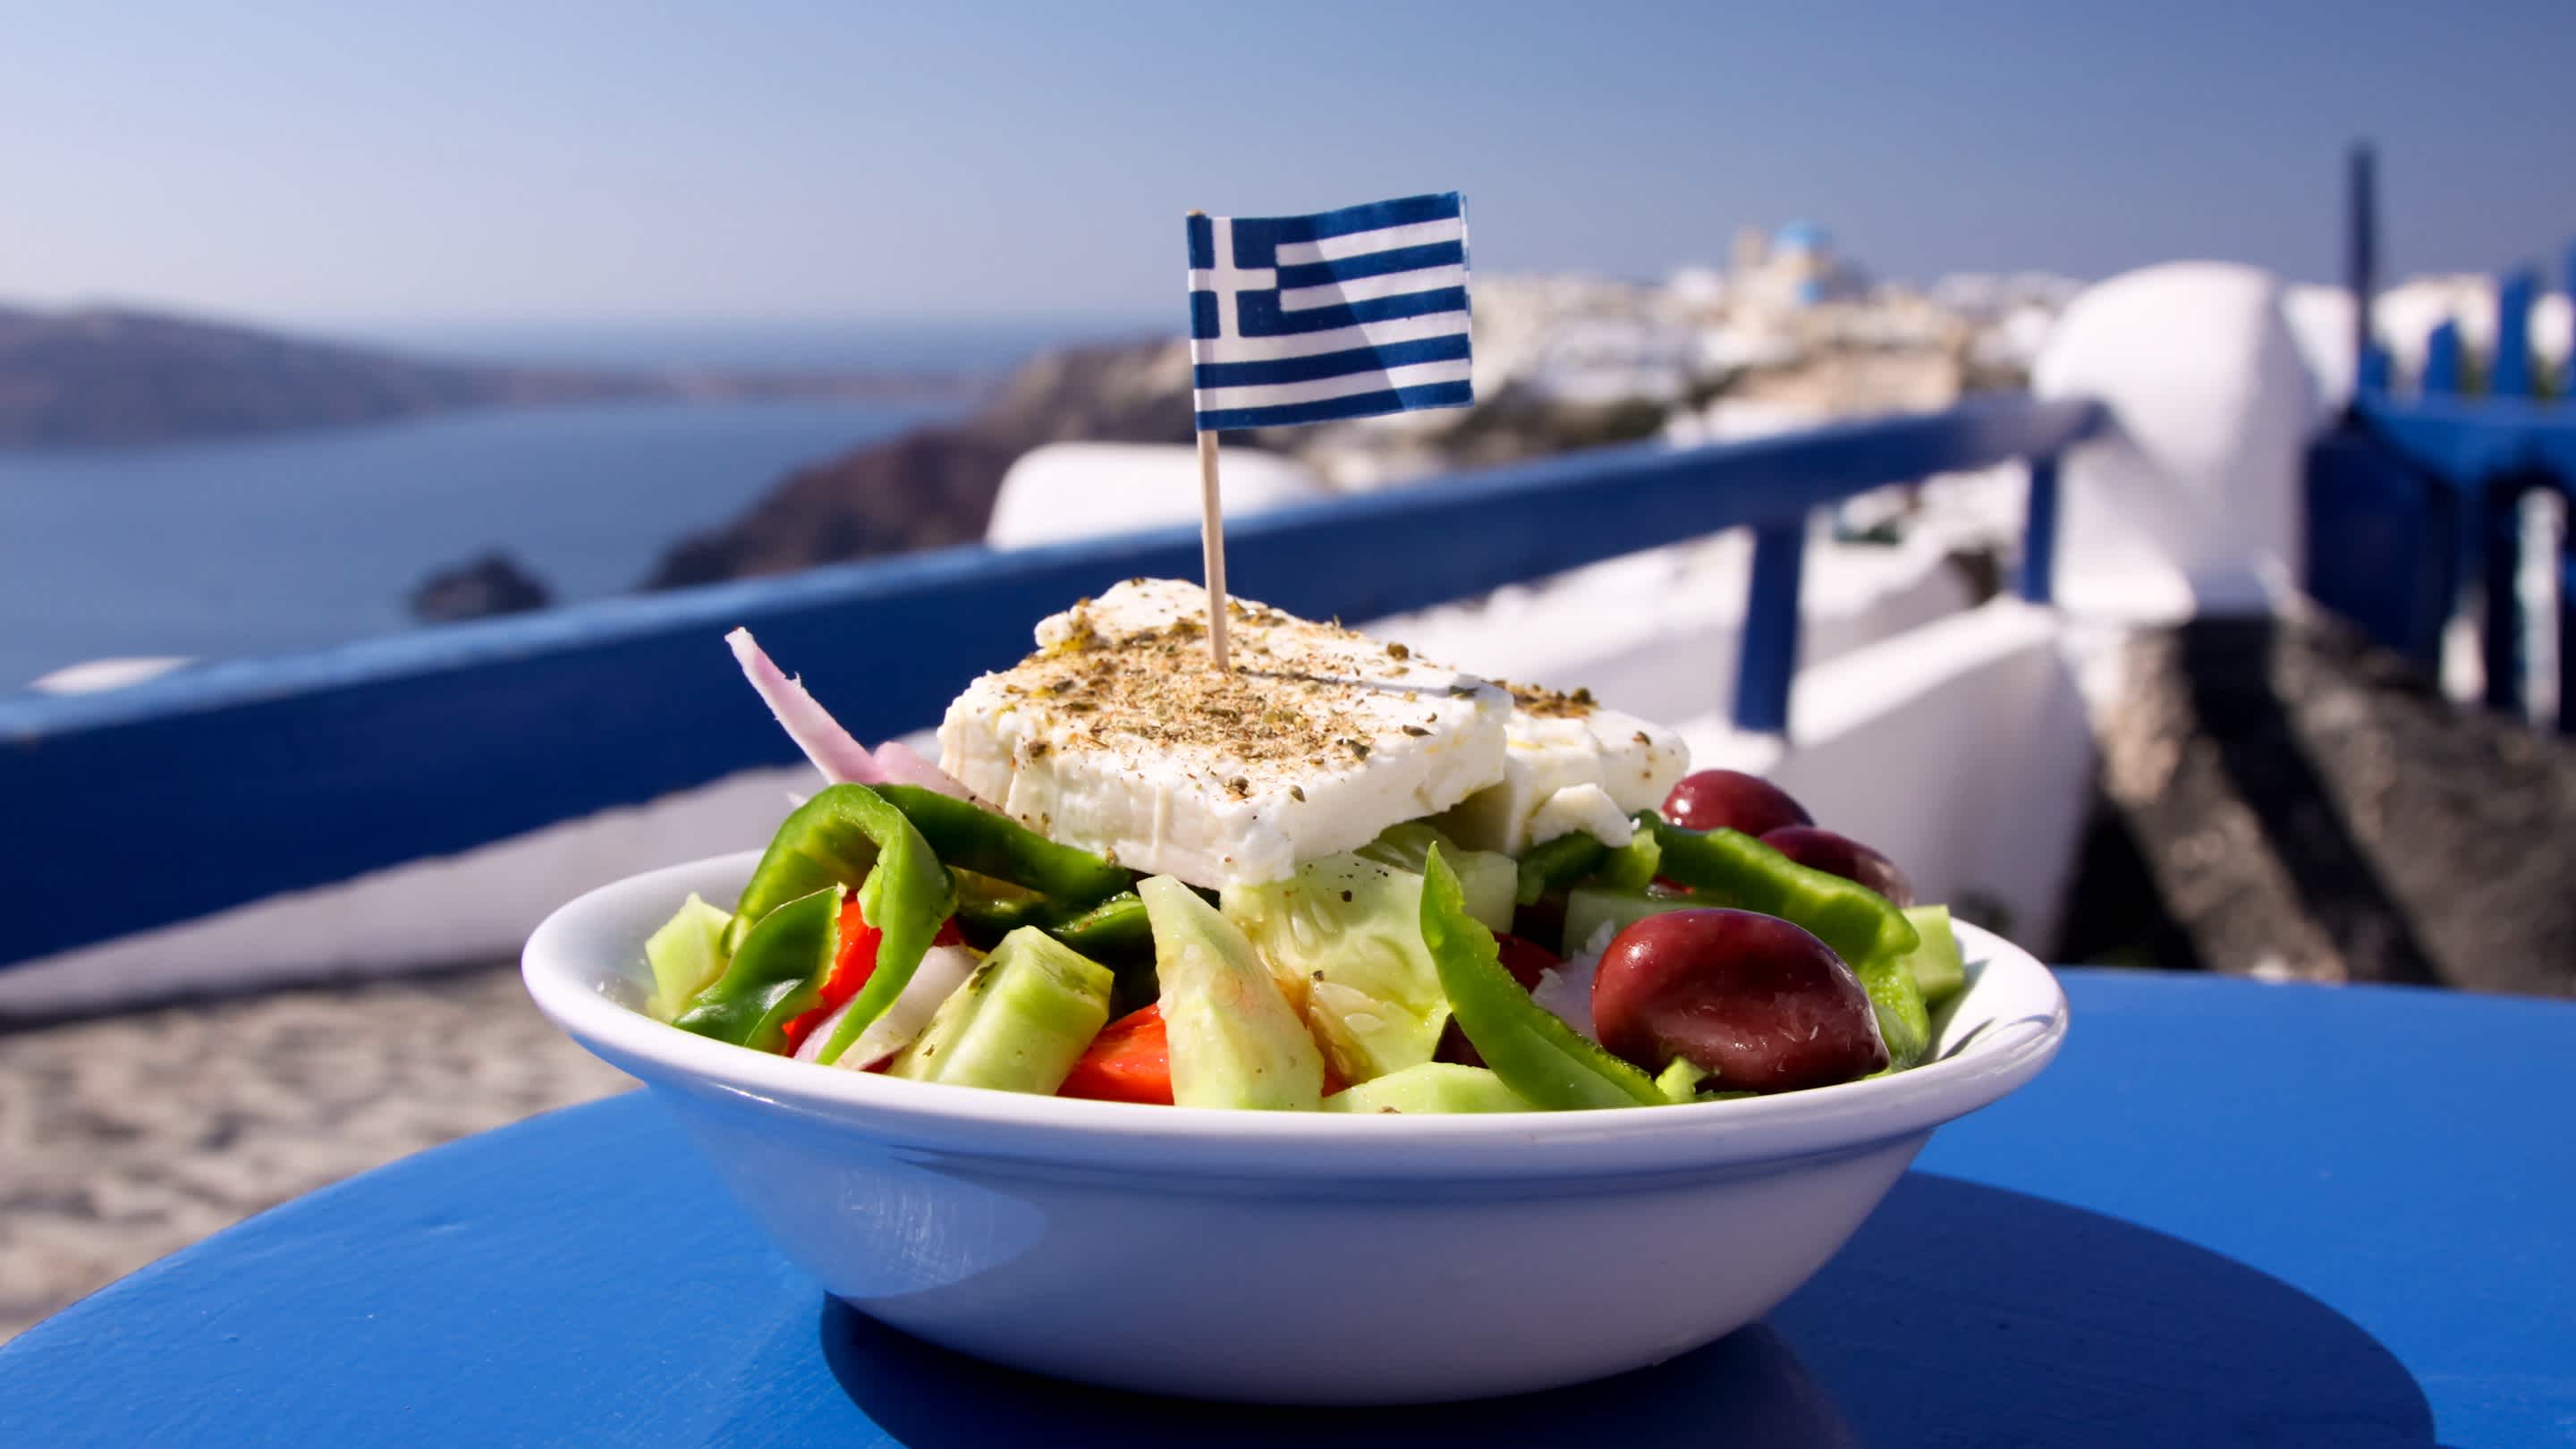 Ein griechischer Salat mit Fetakäse, gekrönt mit einer griechischen Flagge, in Oia, Santorini

